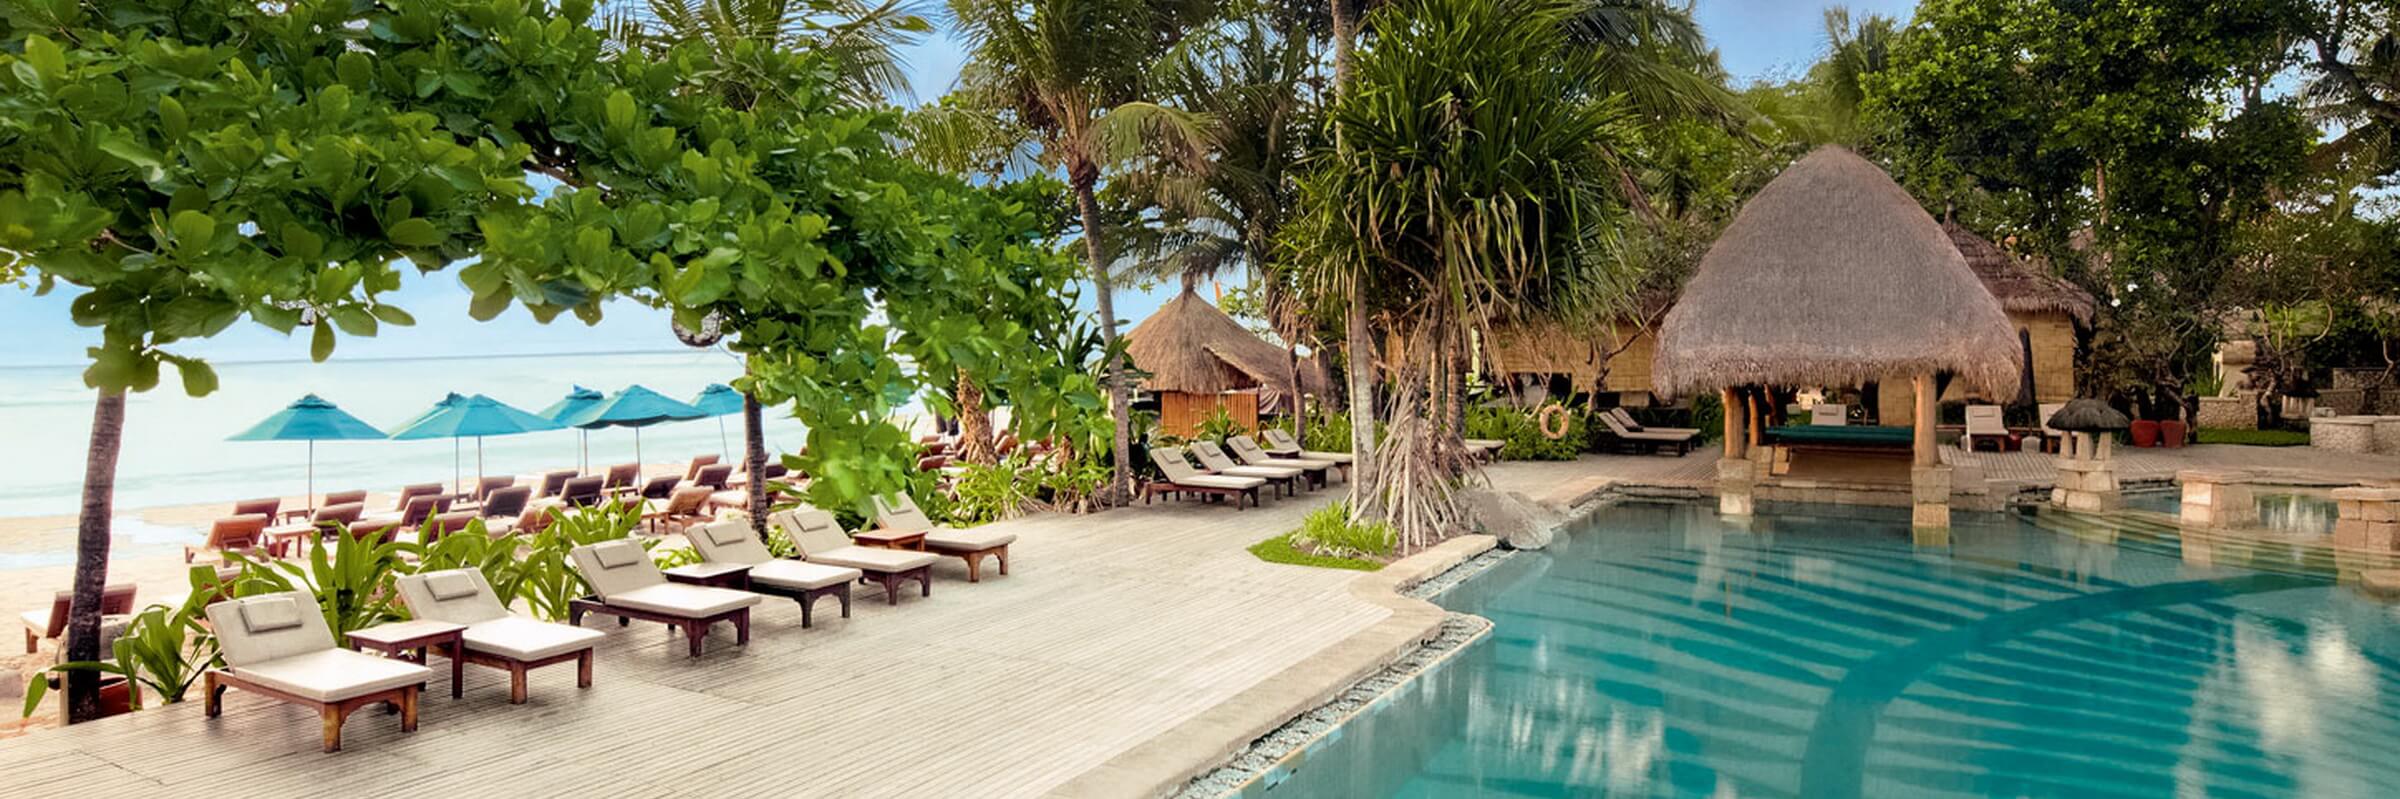 Sonnenliegen am Pool unweit des Strandes des Novotel Bali Benoa Resorts